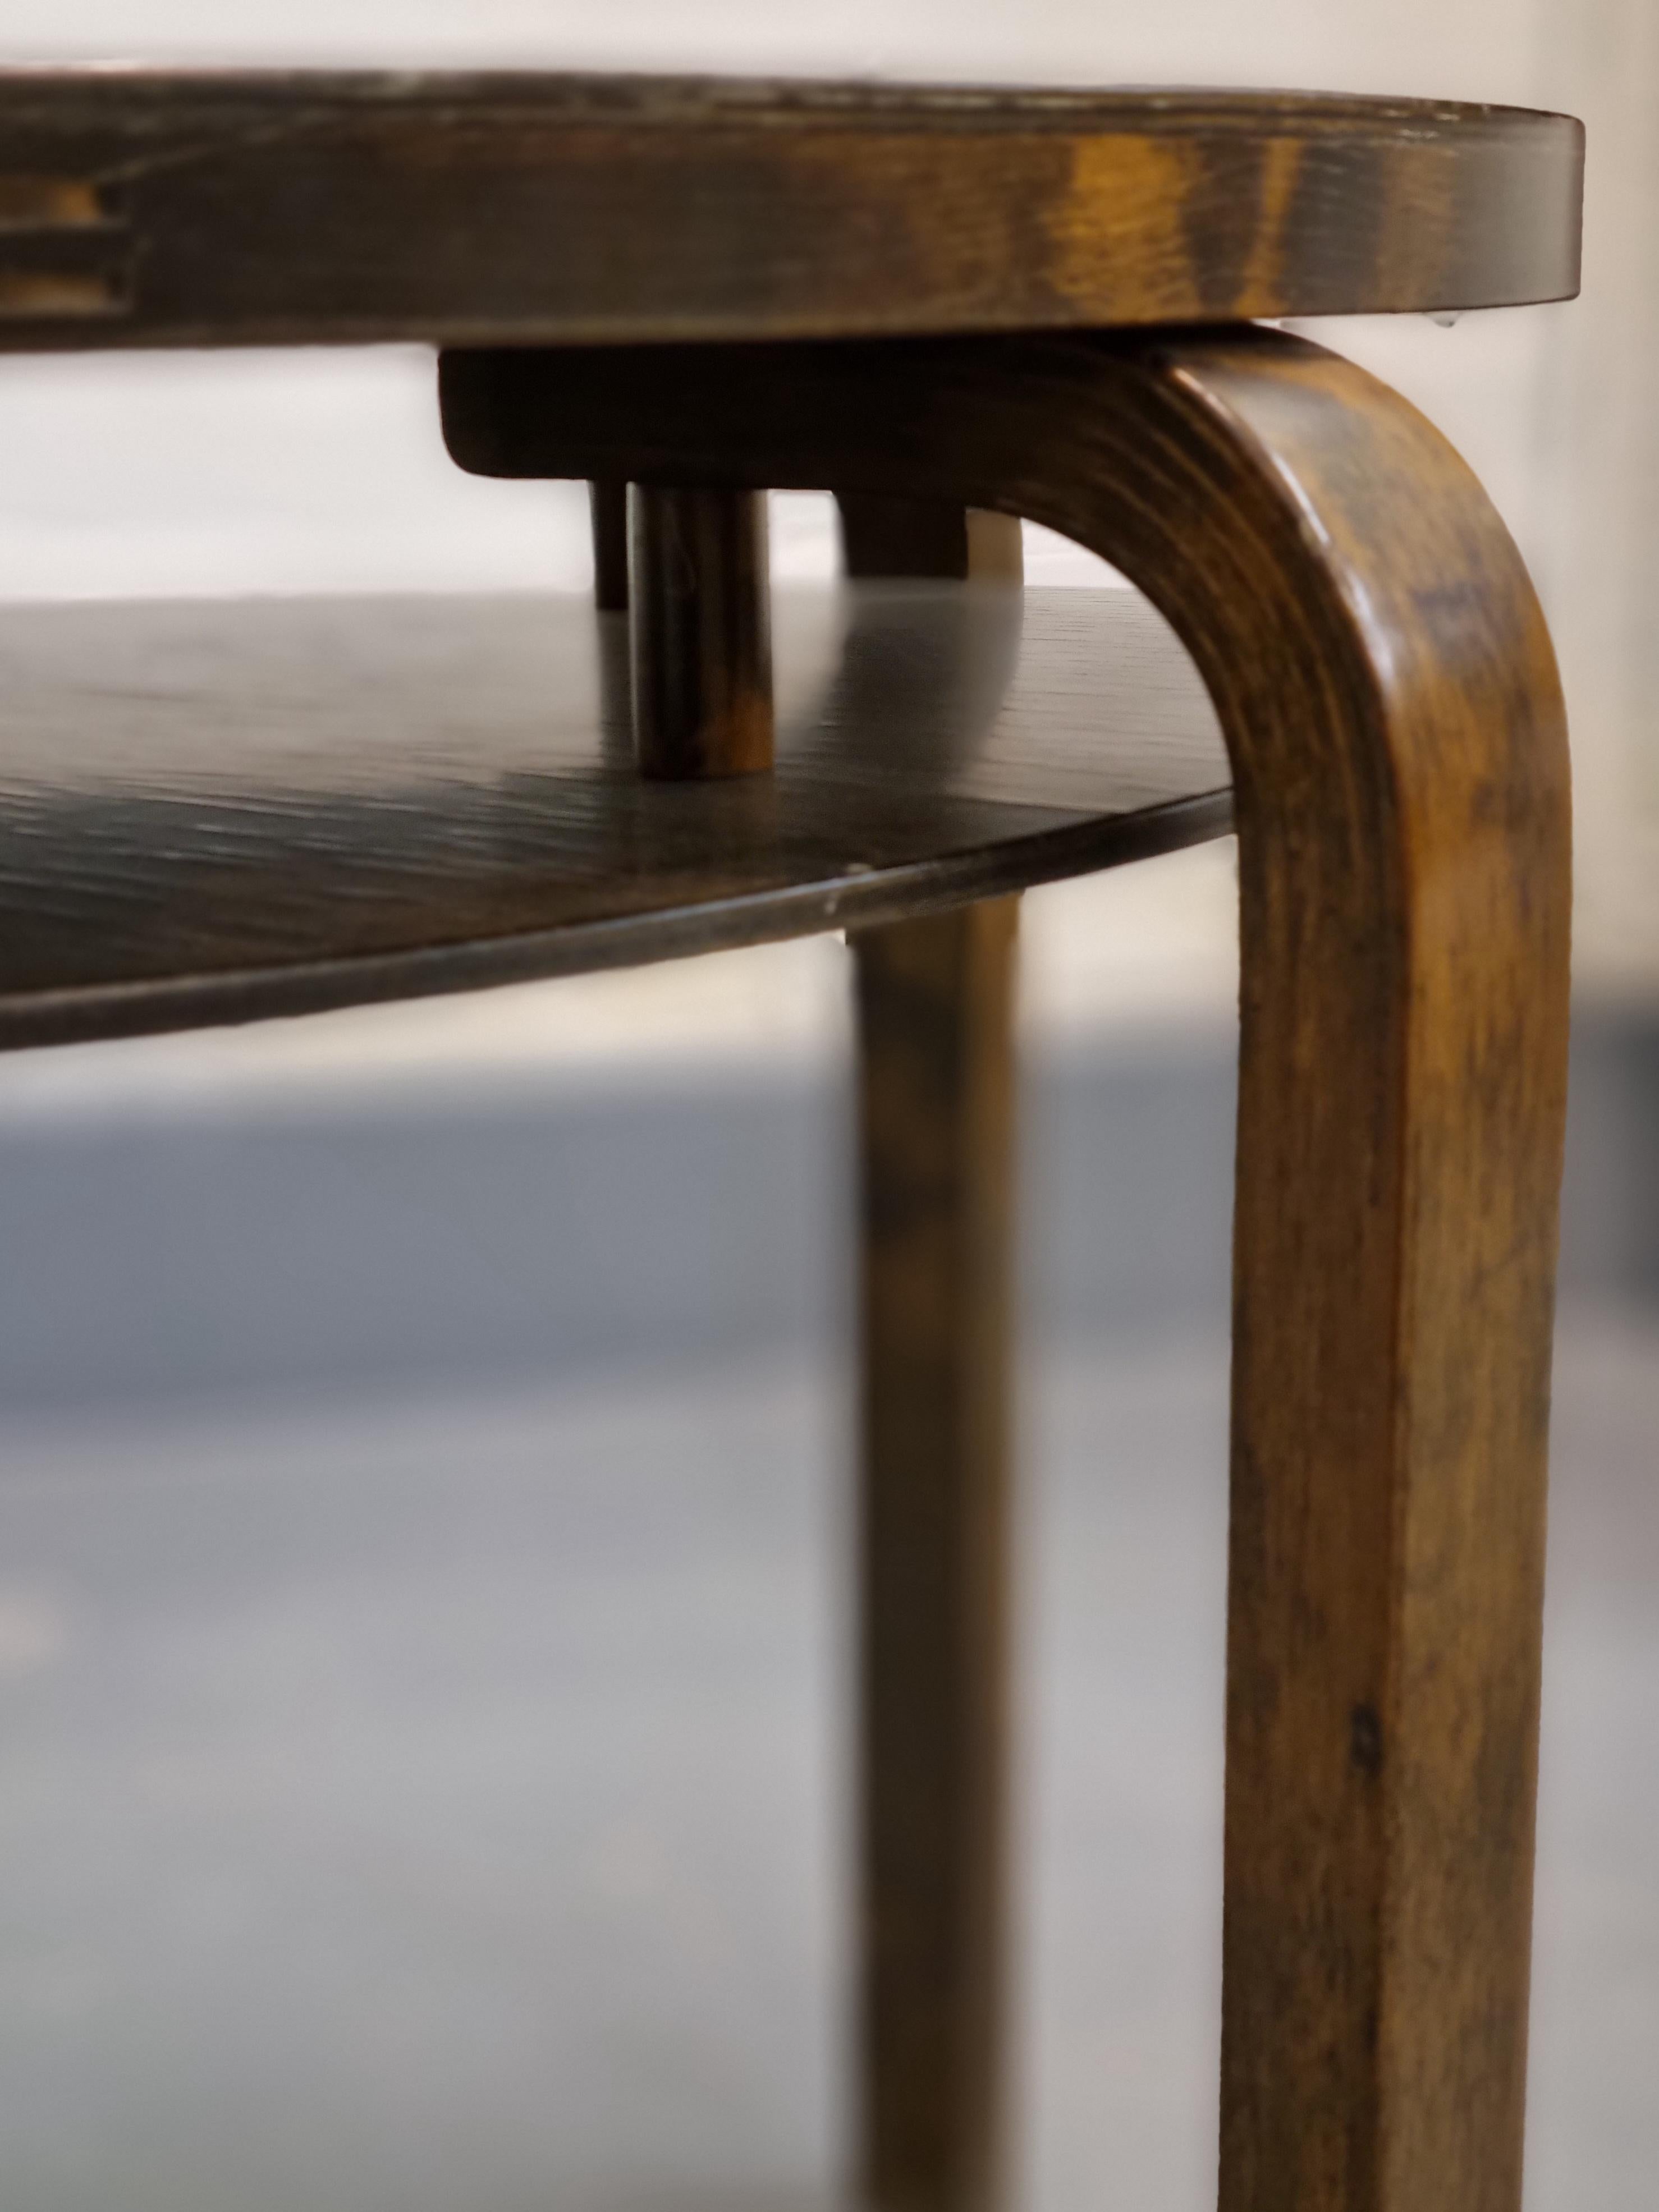 Il s'agit d'une table ronde A71 très polyvalente, conçue par Alvar Aalto (Finlande, 1898-1976) dans les années 1930 pour Design/One. Huonekalu- ja Rakennustyötehdas A.B.

La table est en bouleau teinté noyer, de forme ronde avec des pieds en L. Il y